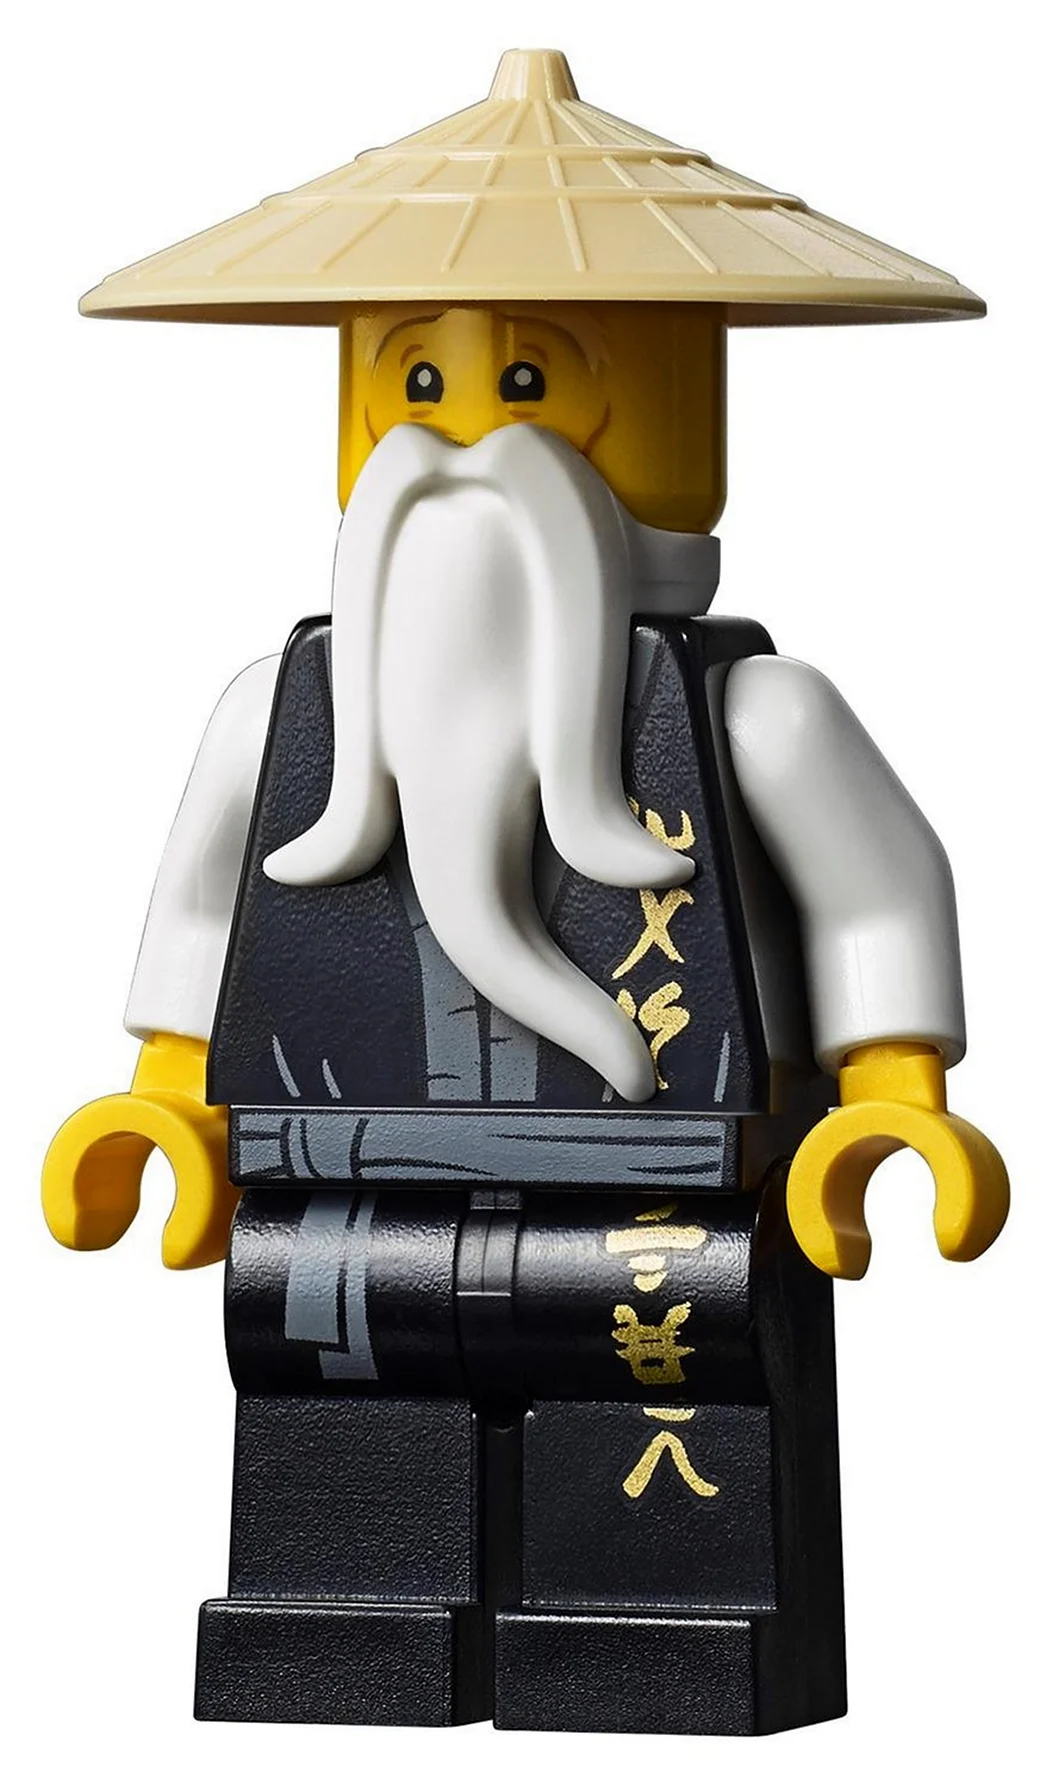 Конструктор LEGO Ninjago 70670 монастырь Кружитцу. Картинка из мультфильма